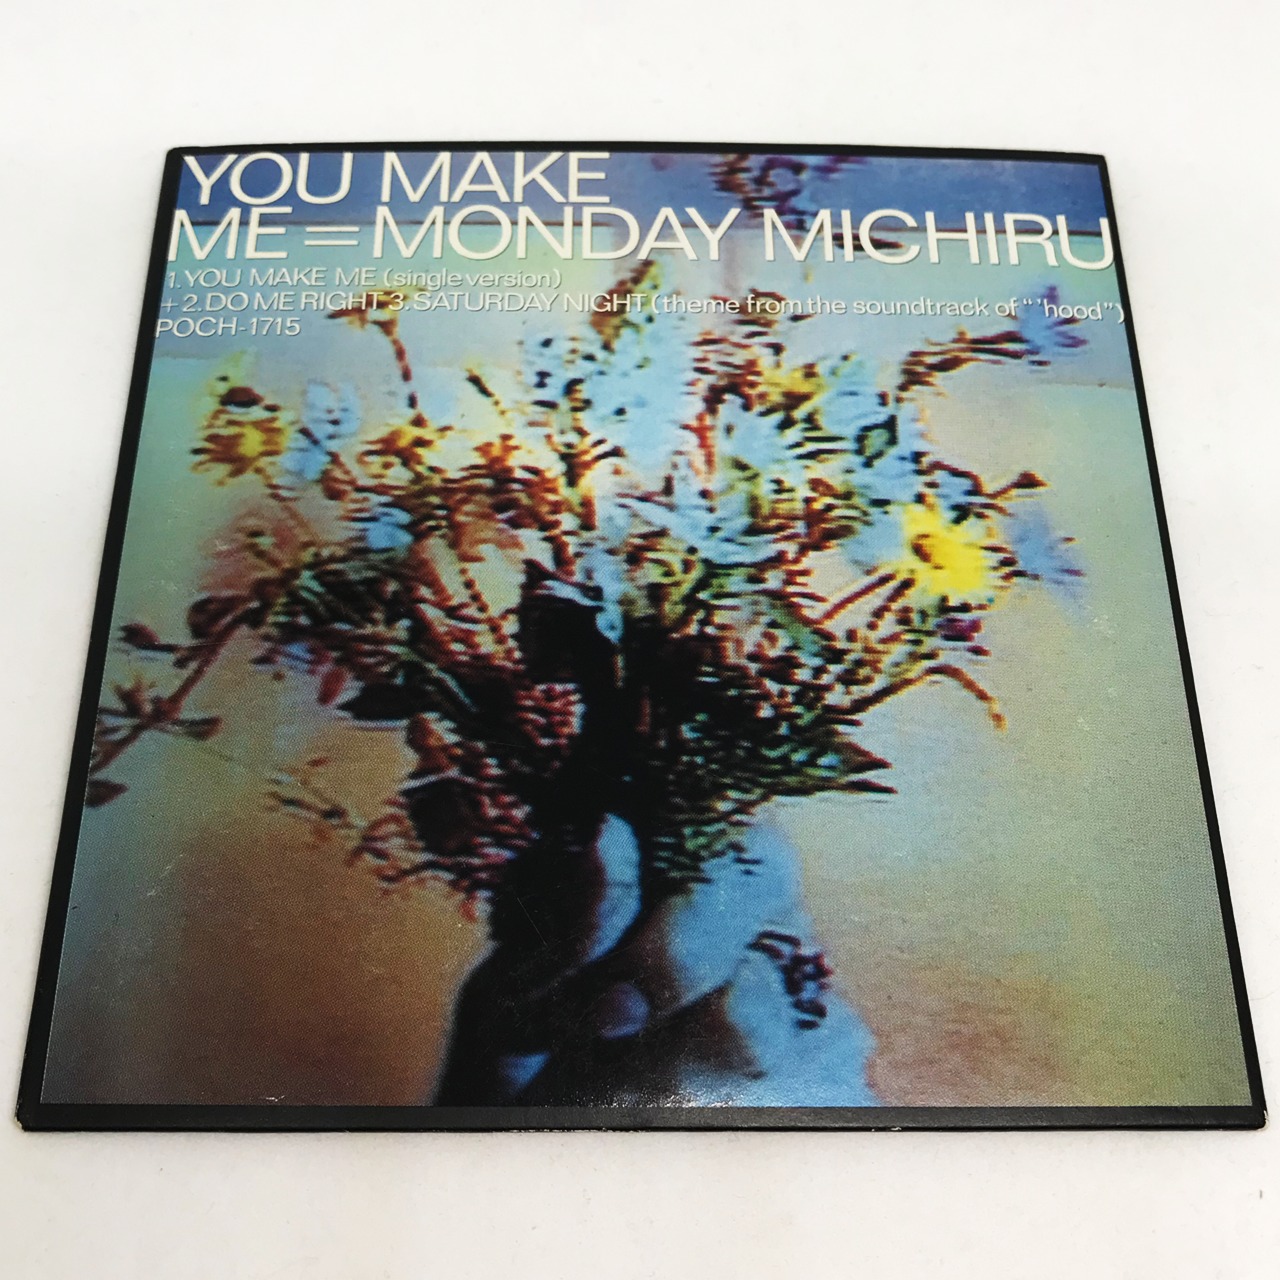 Monday Michiru / You Make Me